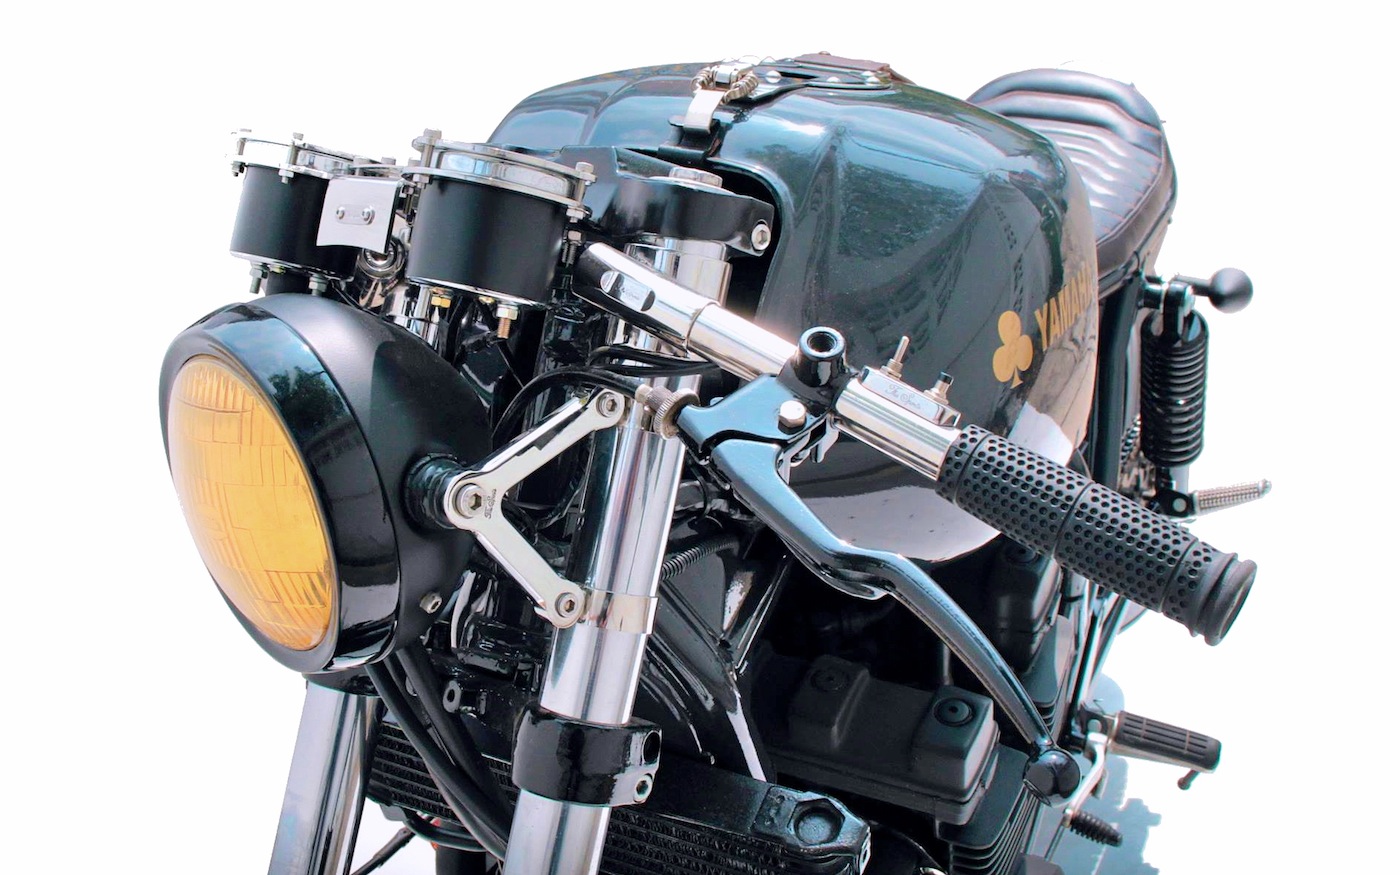 Ямаха xjr 400 - архаичный дорожный мотоцикл